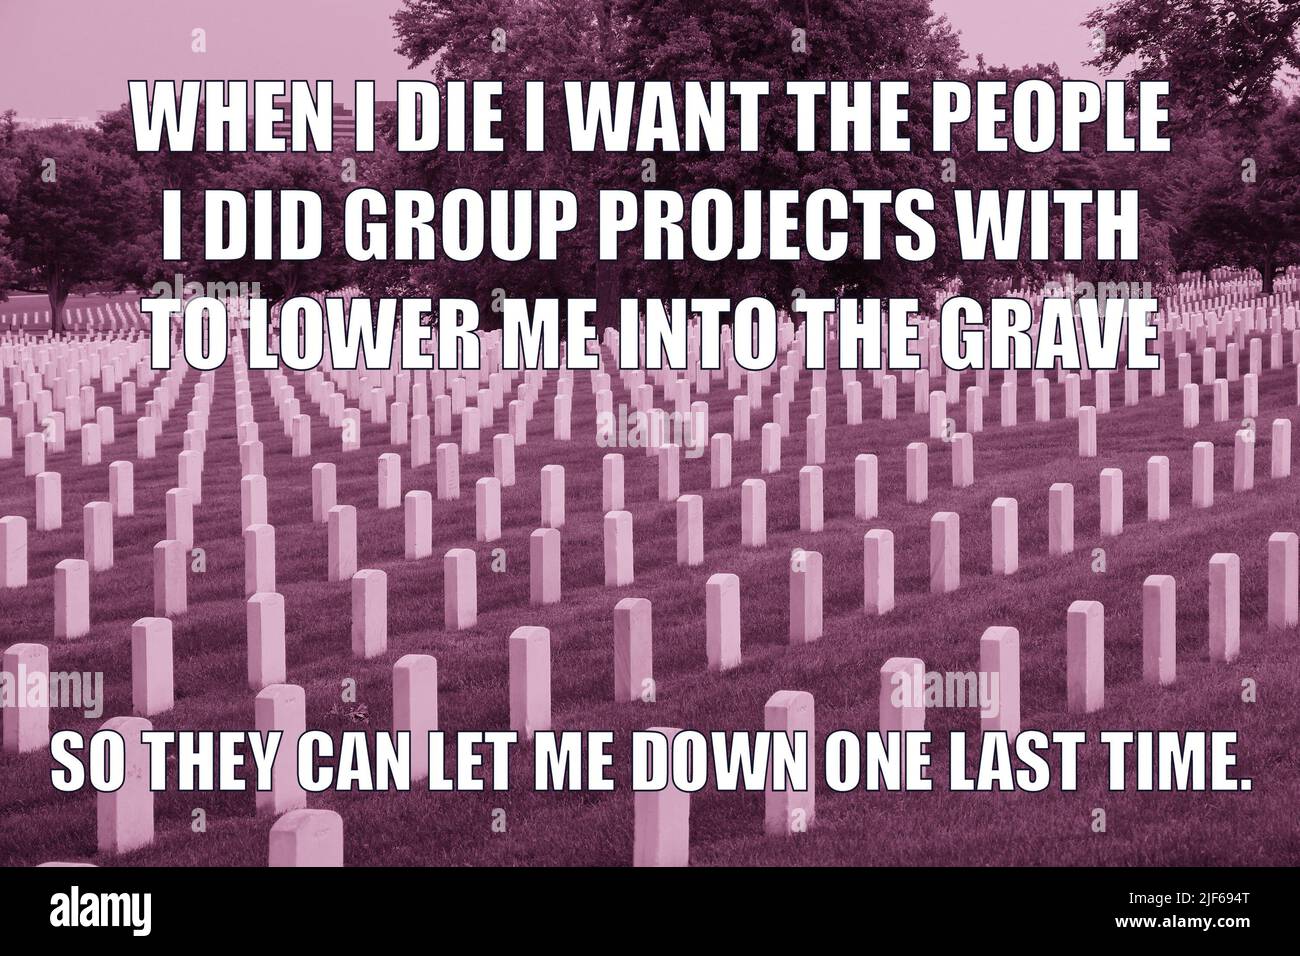 Progetto di gruppo e cimitero oscuro umorismo divertente meme per la condivisione dei social media. Umorismo nero sul lavoro di squadra del progetto di gruppo. Foto Stock